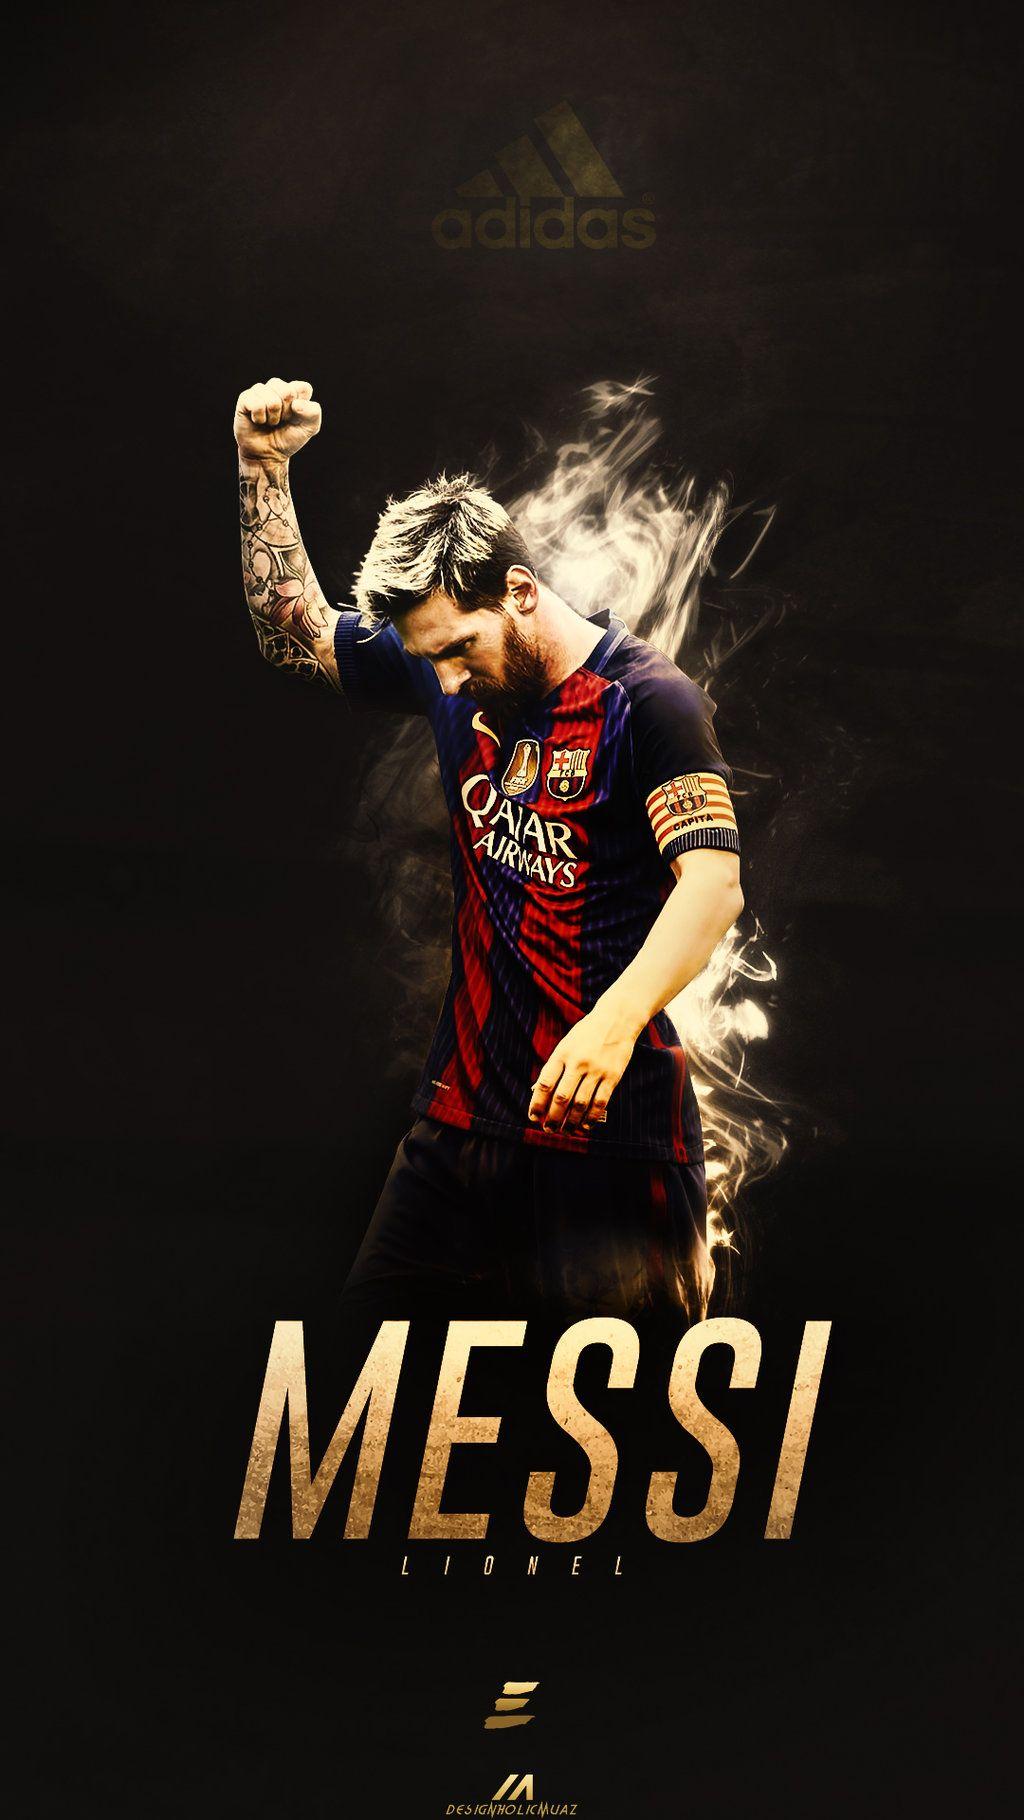 Là một tín đồ của bóng đá và Lionel Messi, bạn đang tìm kiếm một bộ sưu tập hình ảnh đầy táo bạo và đẹp mắt? Hãy đến với bộ hình nền bóng đá Messi chuyên nghiệp của chúng tôi! Với những tấm hình đầy màu sắc, bạn sẽ có một bộ ảnh đầy phong cách để trang trí cho màn hình điện thoại hoặc máy tính của mình.